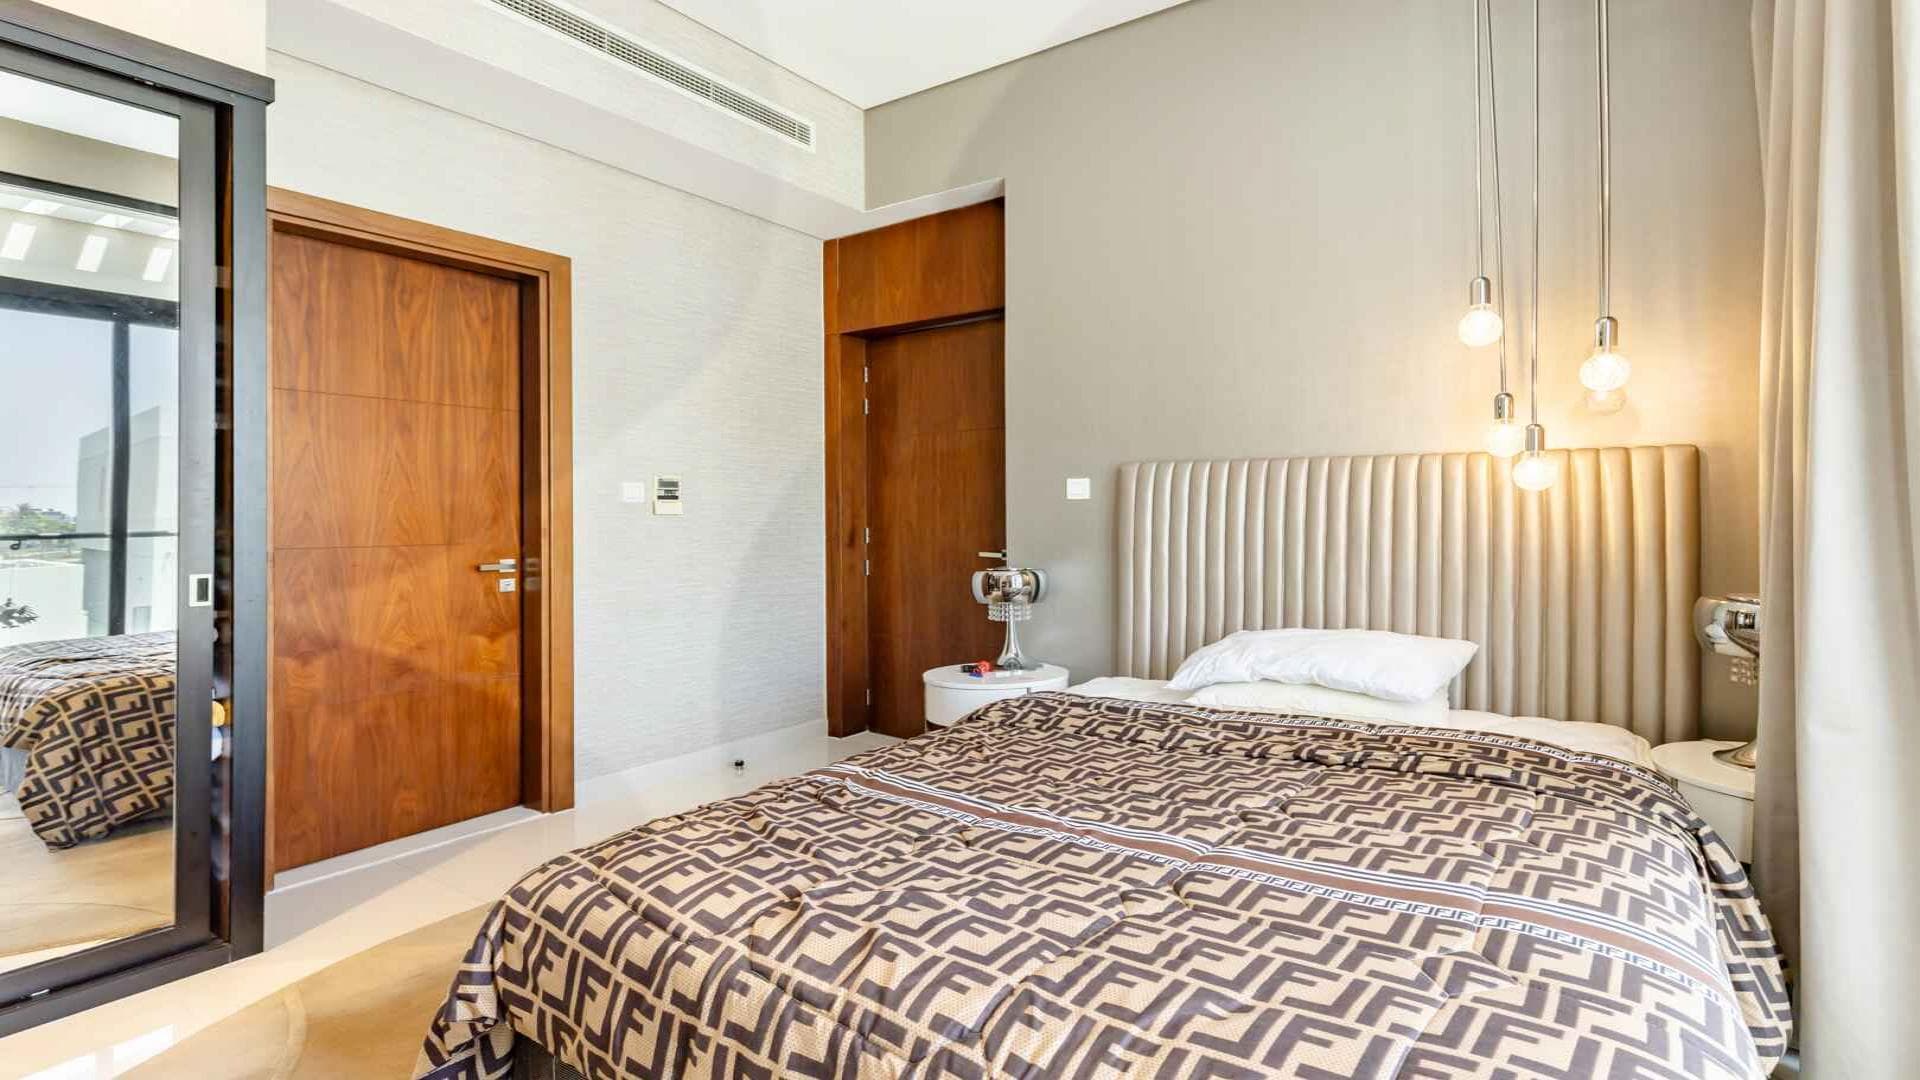 5 Bedroom Villa For Rent Tasameem Tower 1 Lp37388 Bcc9f3572dd3780.jpg